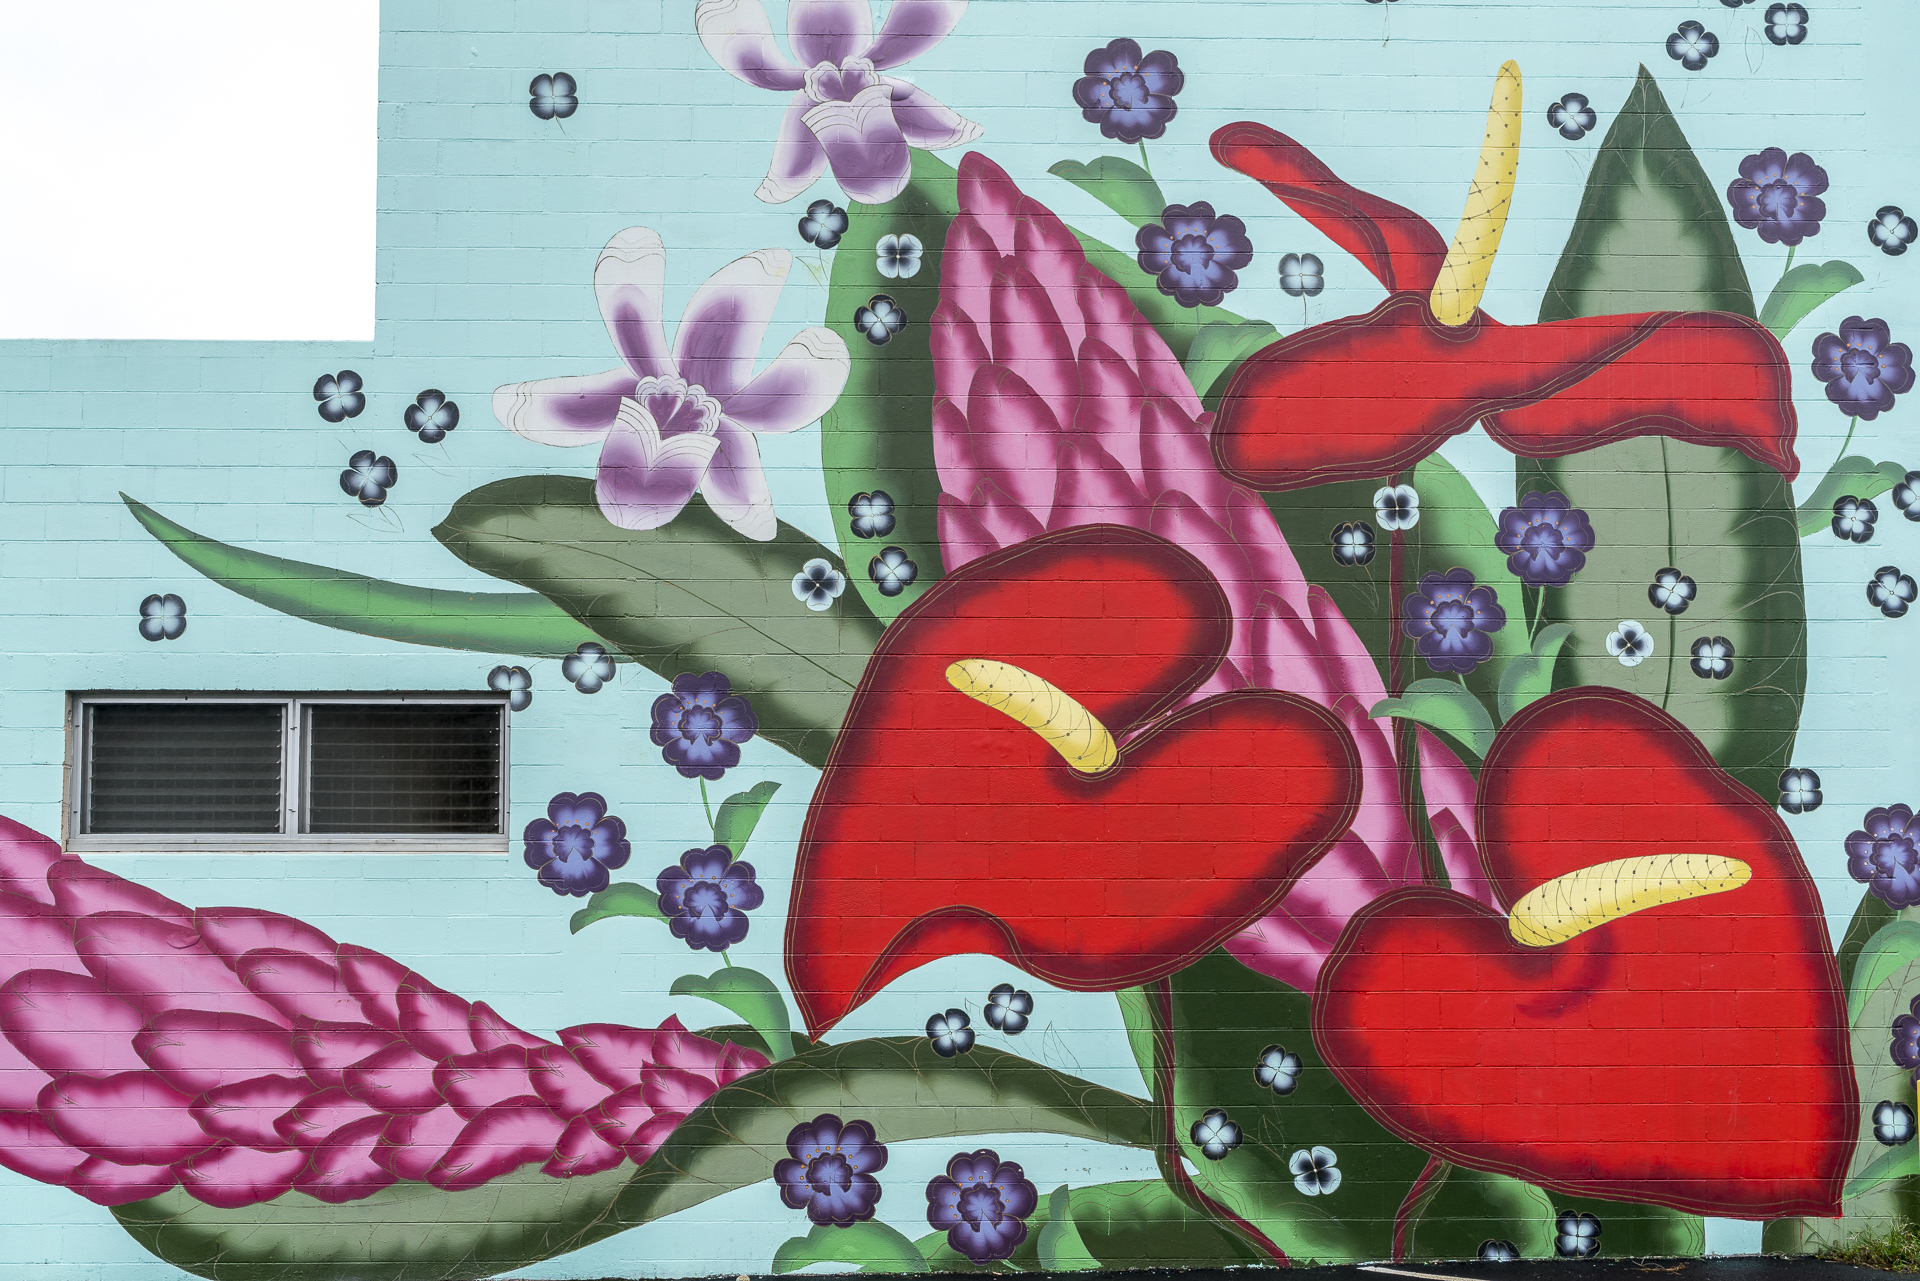 Hilo Street Art